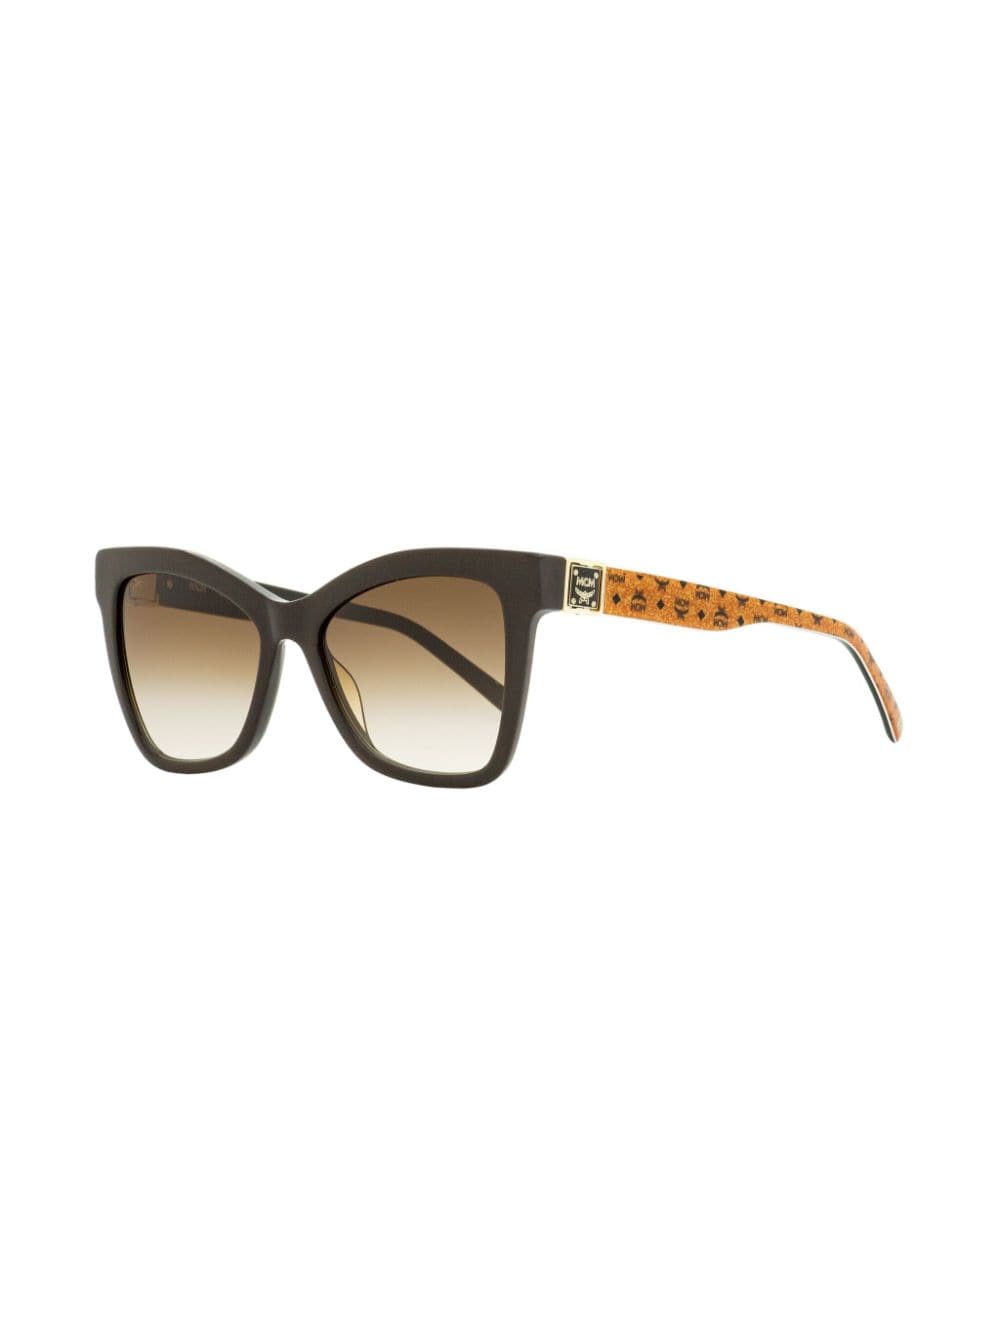 MCM 712S zonnebril met vlinder montuur - Bruin